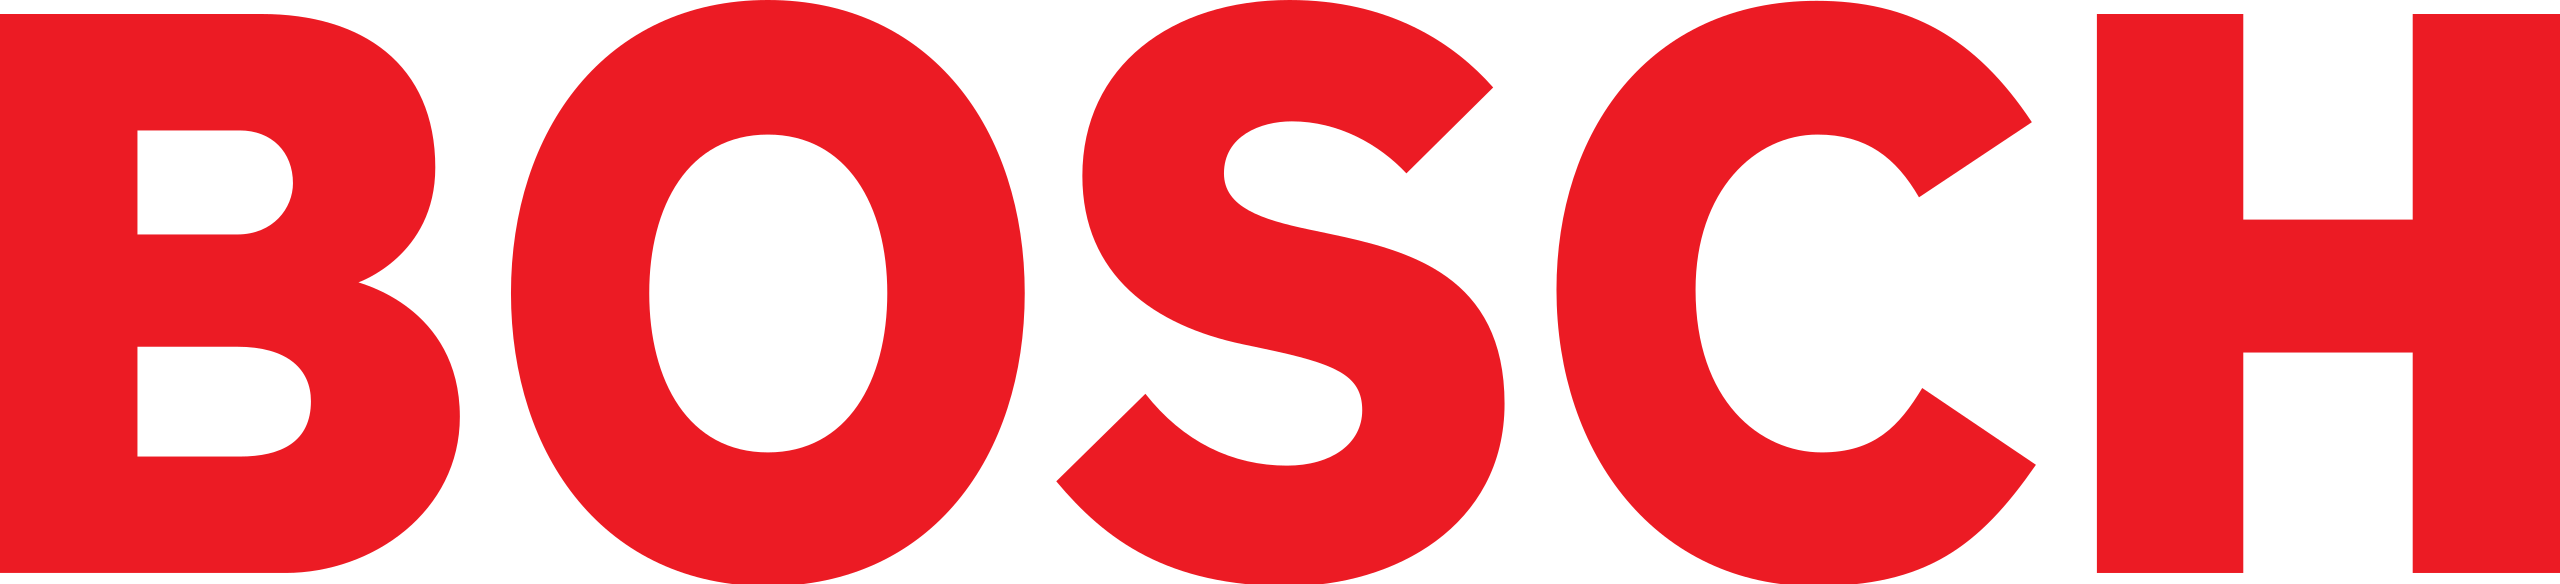 bosch_logo-www.samelect.com